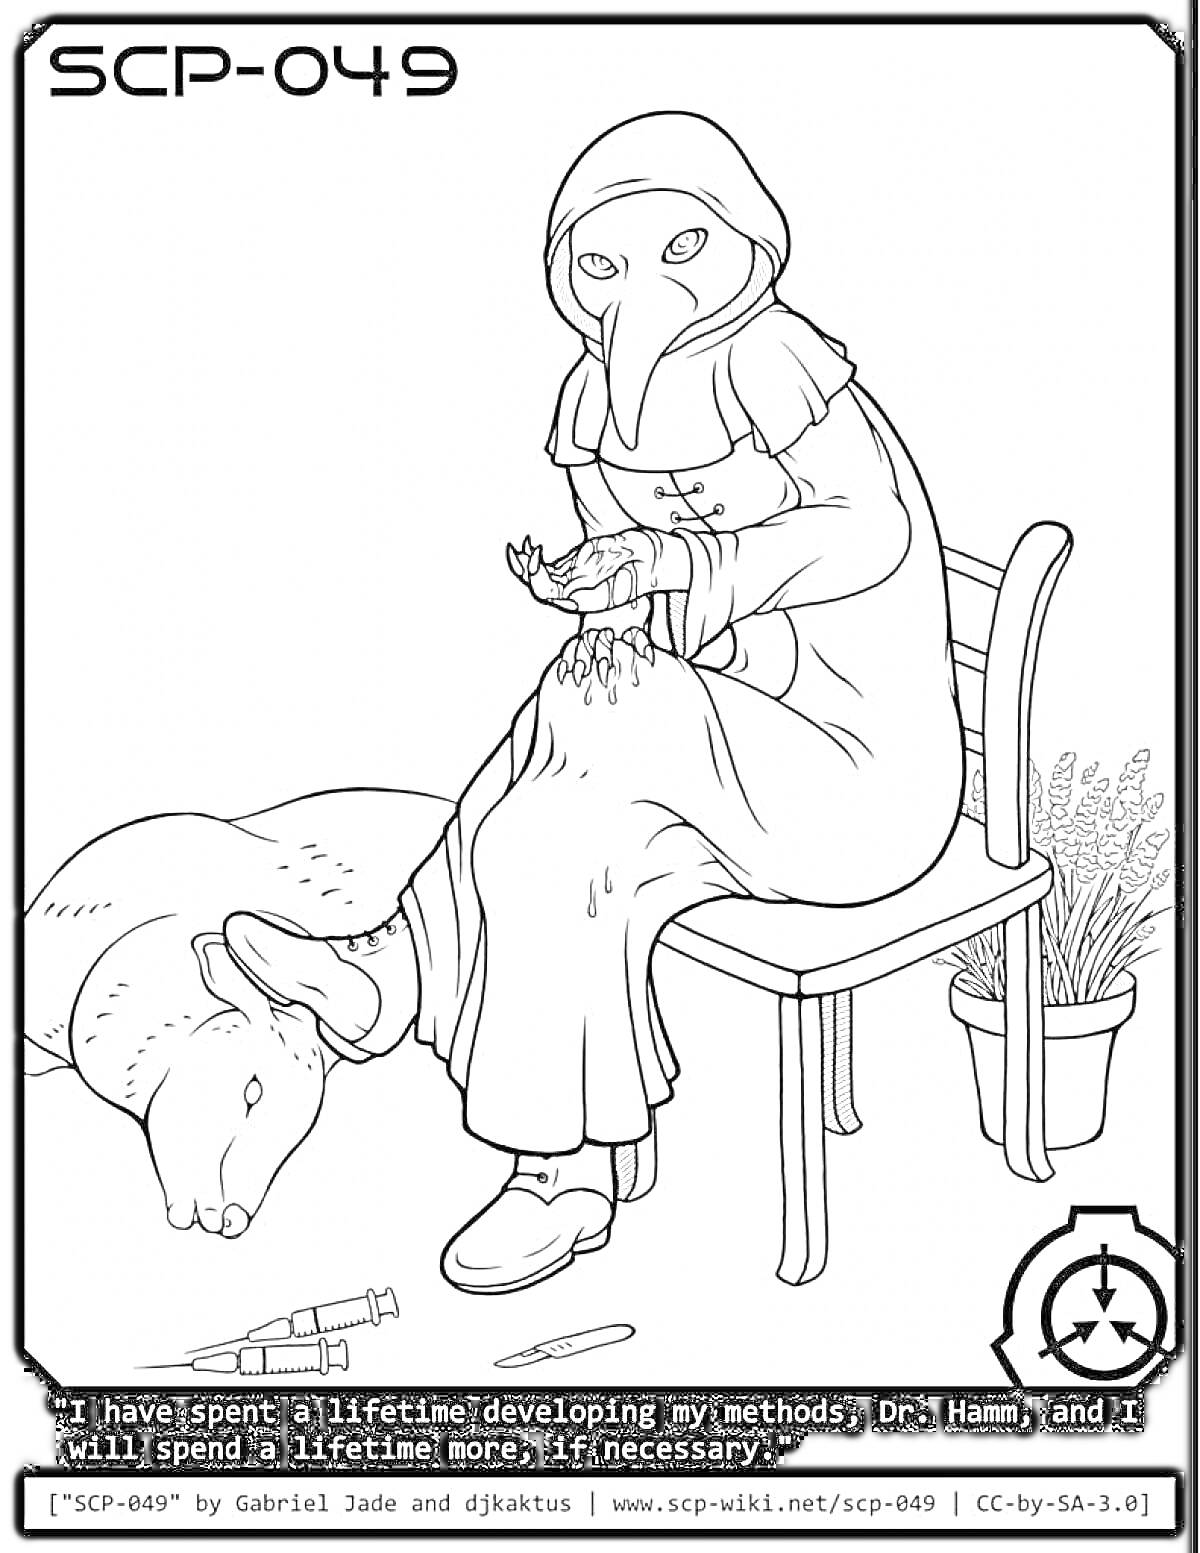 Раскраска SCP-049, изображение SCP-049 в маске врача-чумного, сидящего на стуле рядом с тушей мертвого животного и инъекционными шприцами